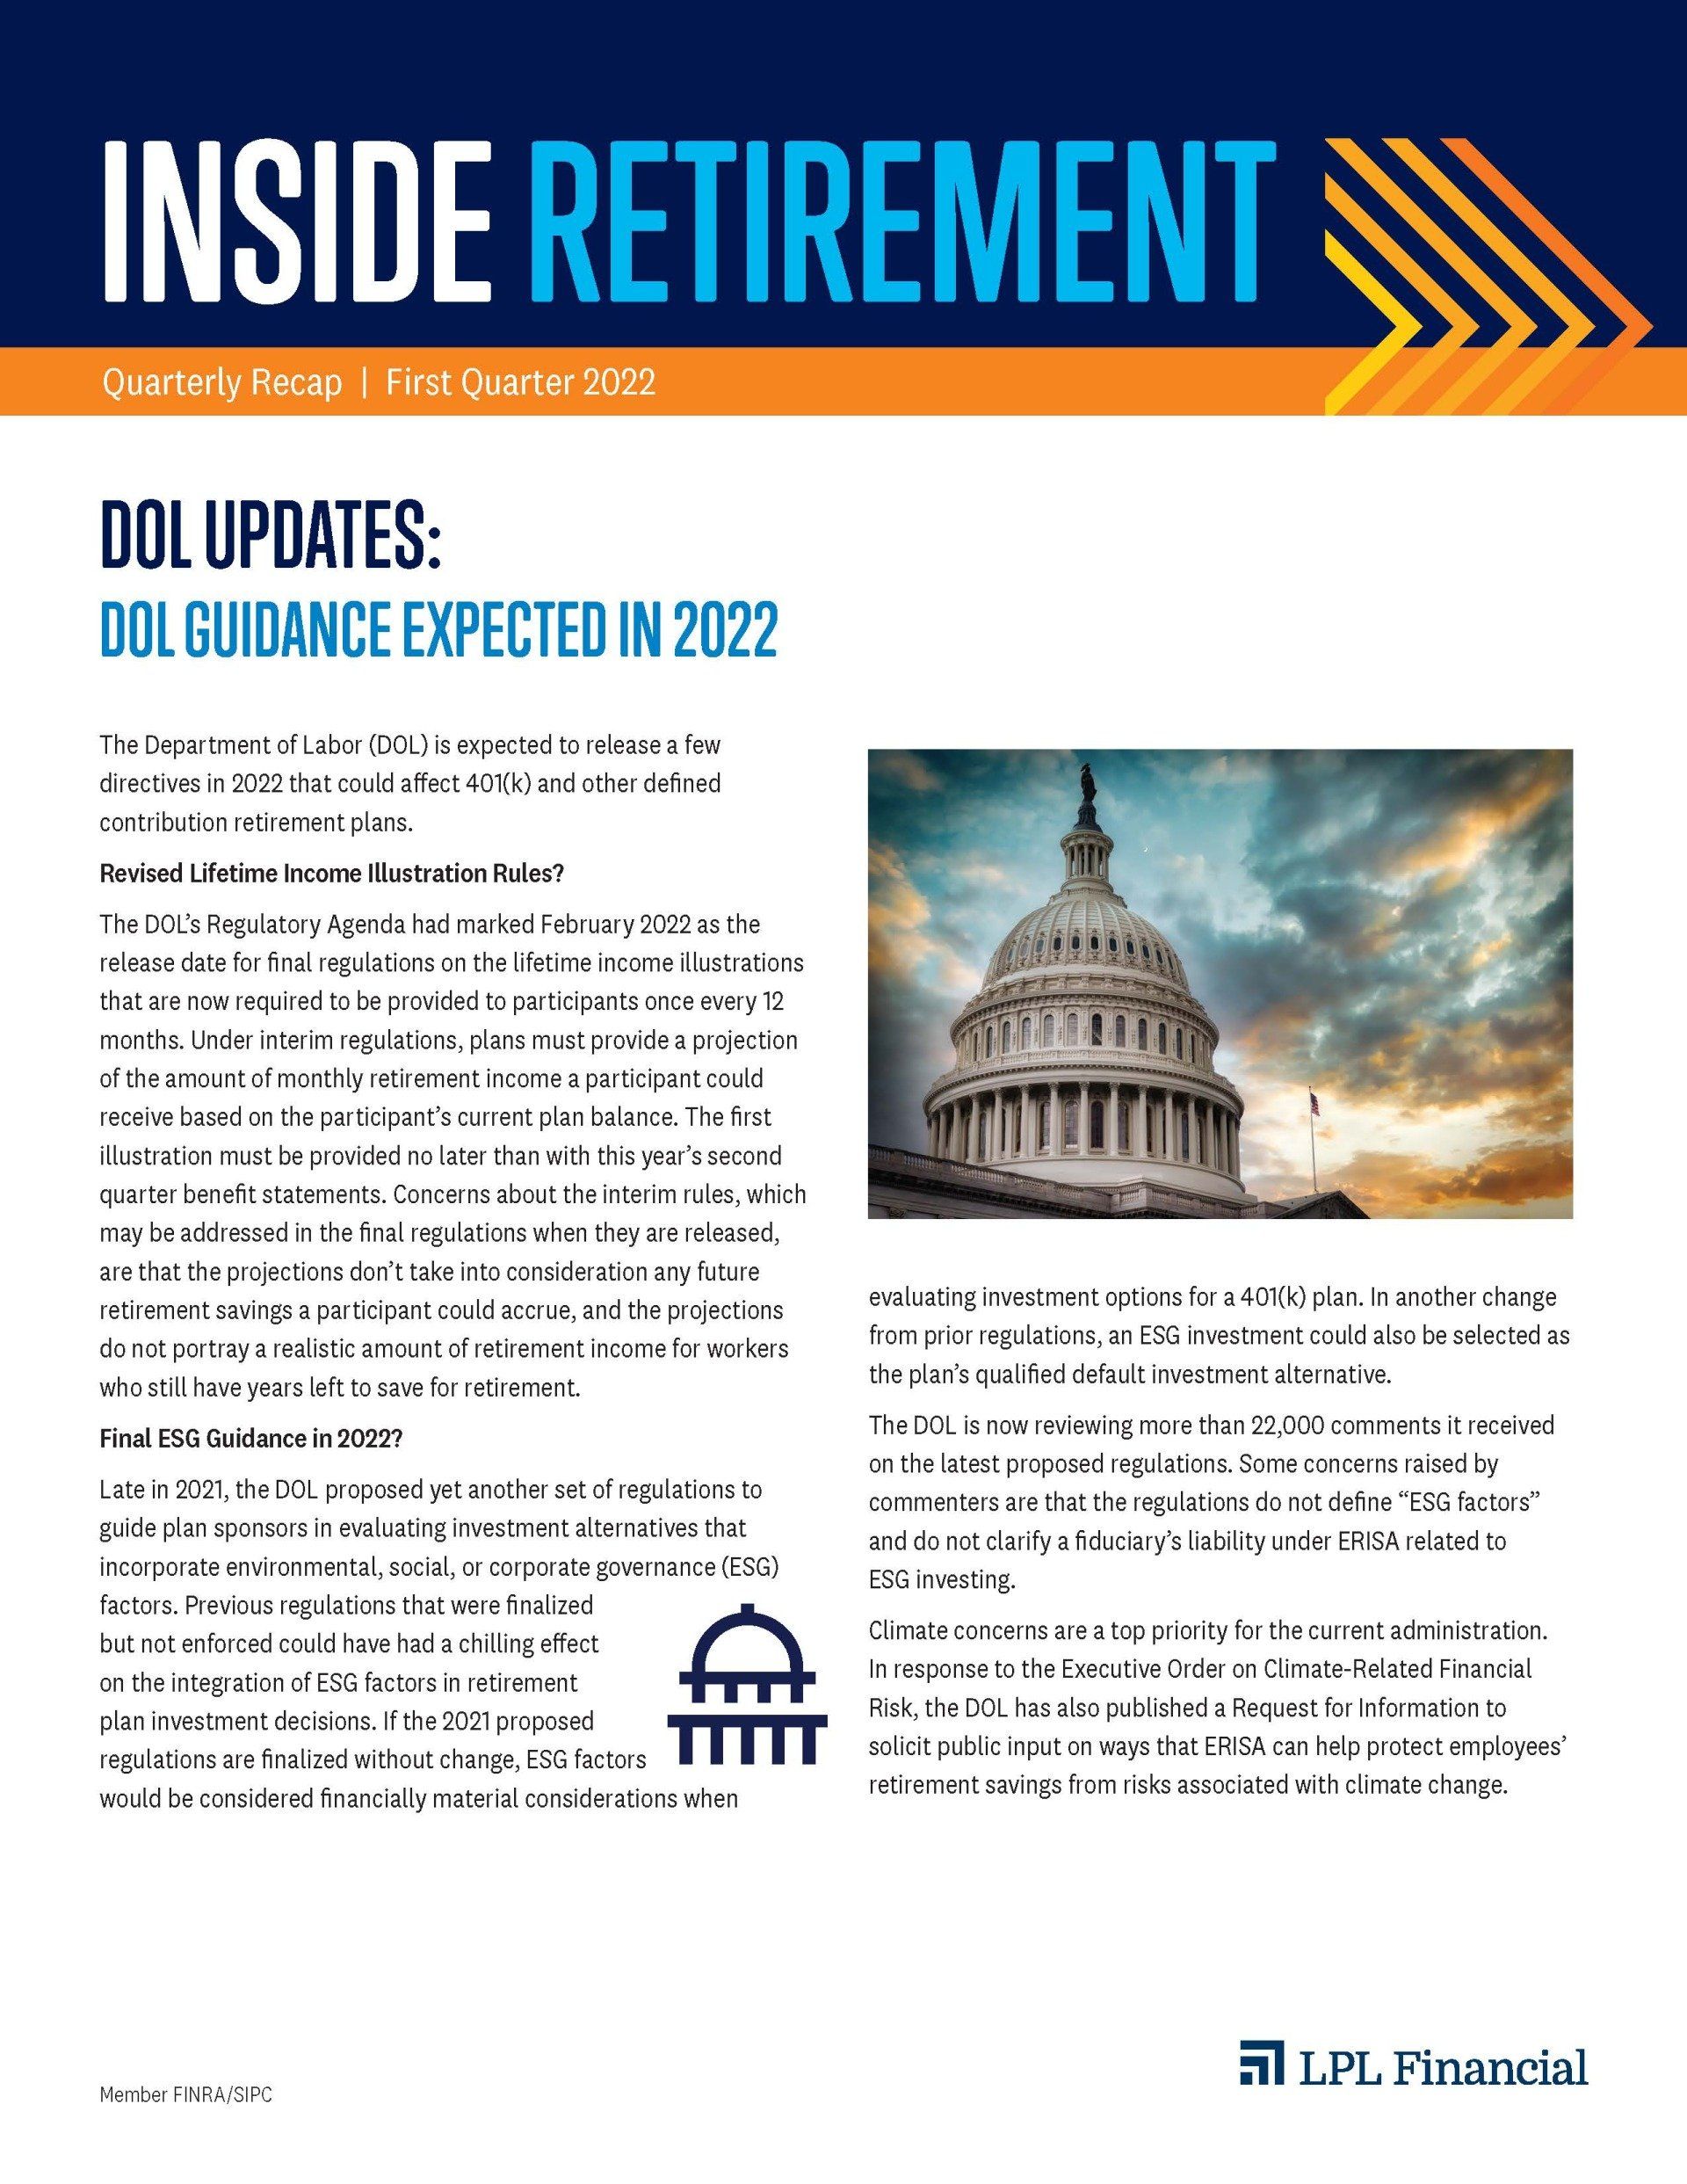 Inside Retirement Q3 2021 Newsletter